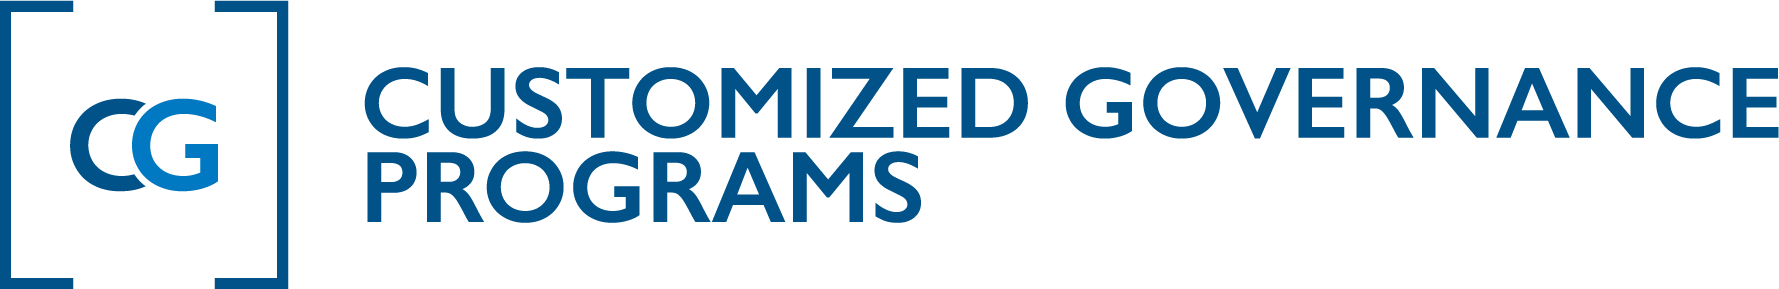 NAMIC Customized Governance Programs Logo